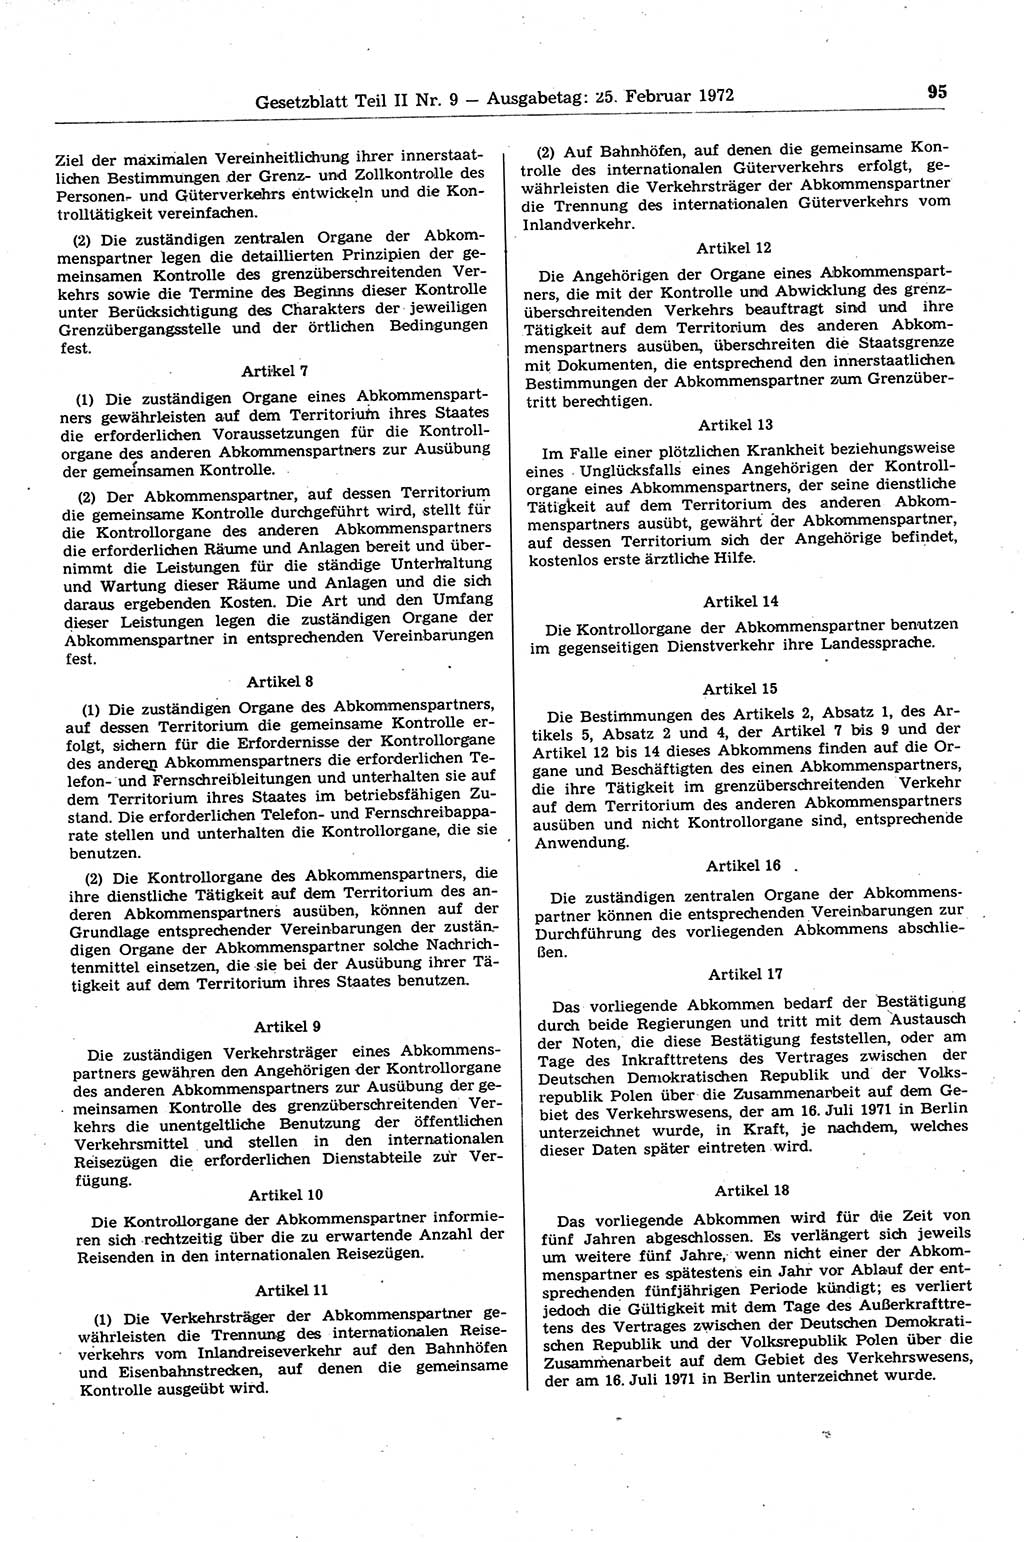 Gesetzblatt (GBl.) der Deutschen Demokratischen Republik (DDR) Teil ⅠⅠ 1972, Seite 95 (GBl. DDR ⅠⅠ 1972, S. 95)